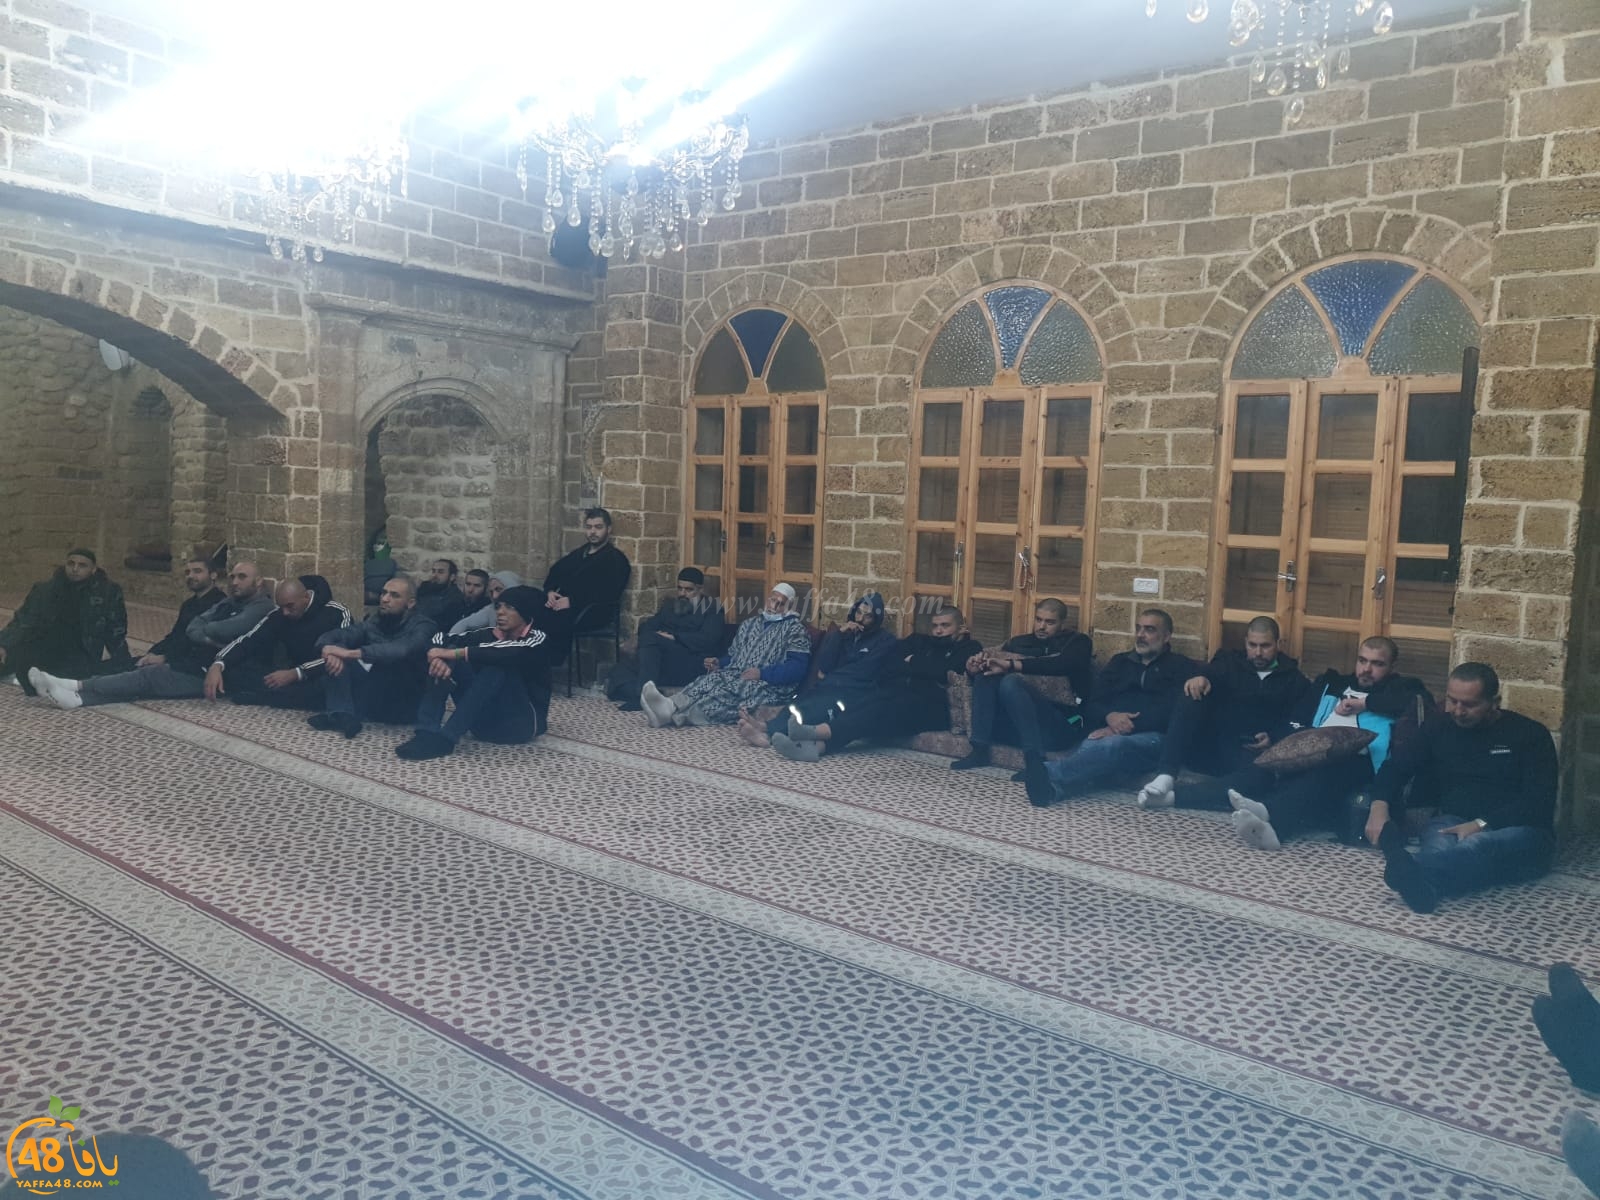  فيديو: مشاركة واسعة في درس معاً ندعو الى الله في مسجد البحر 